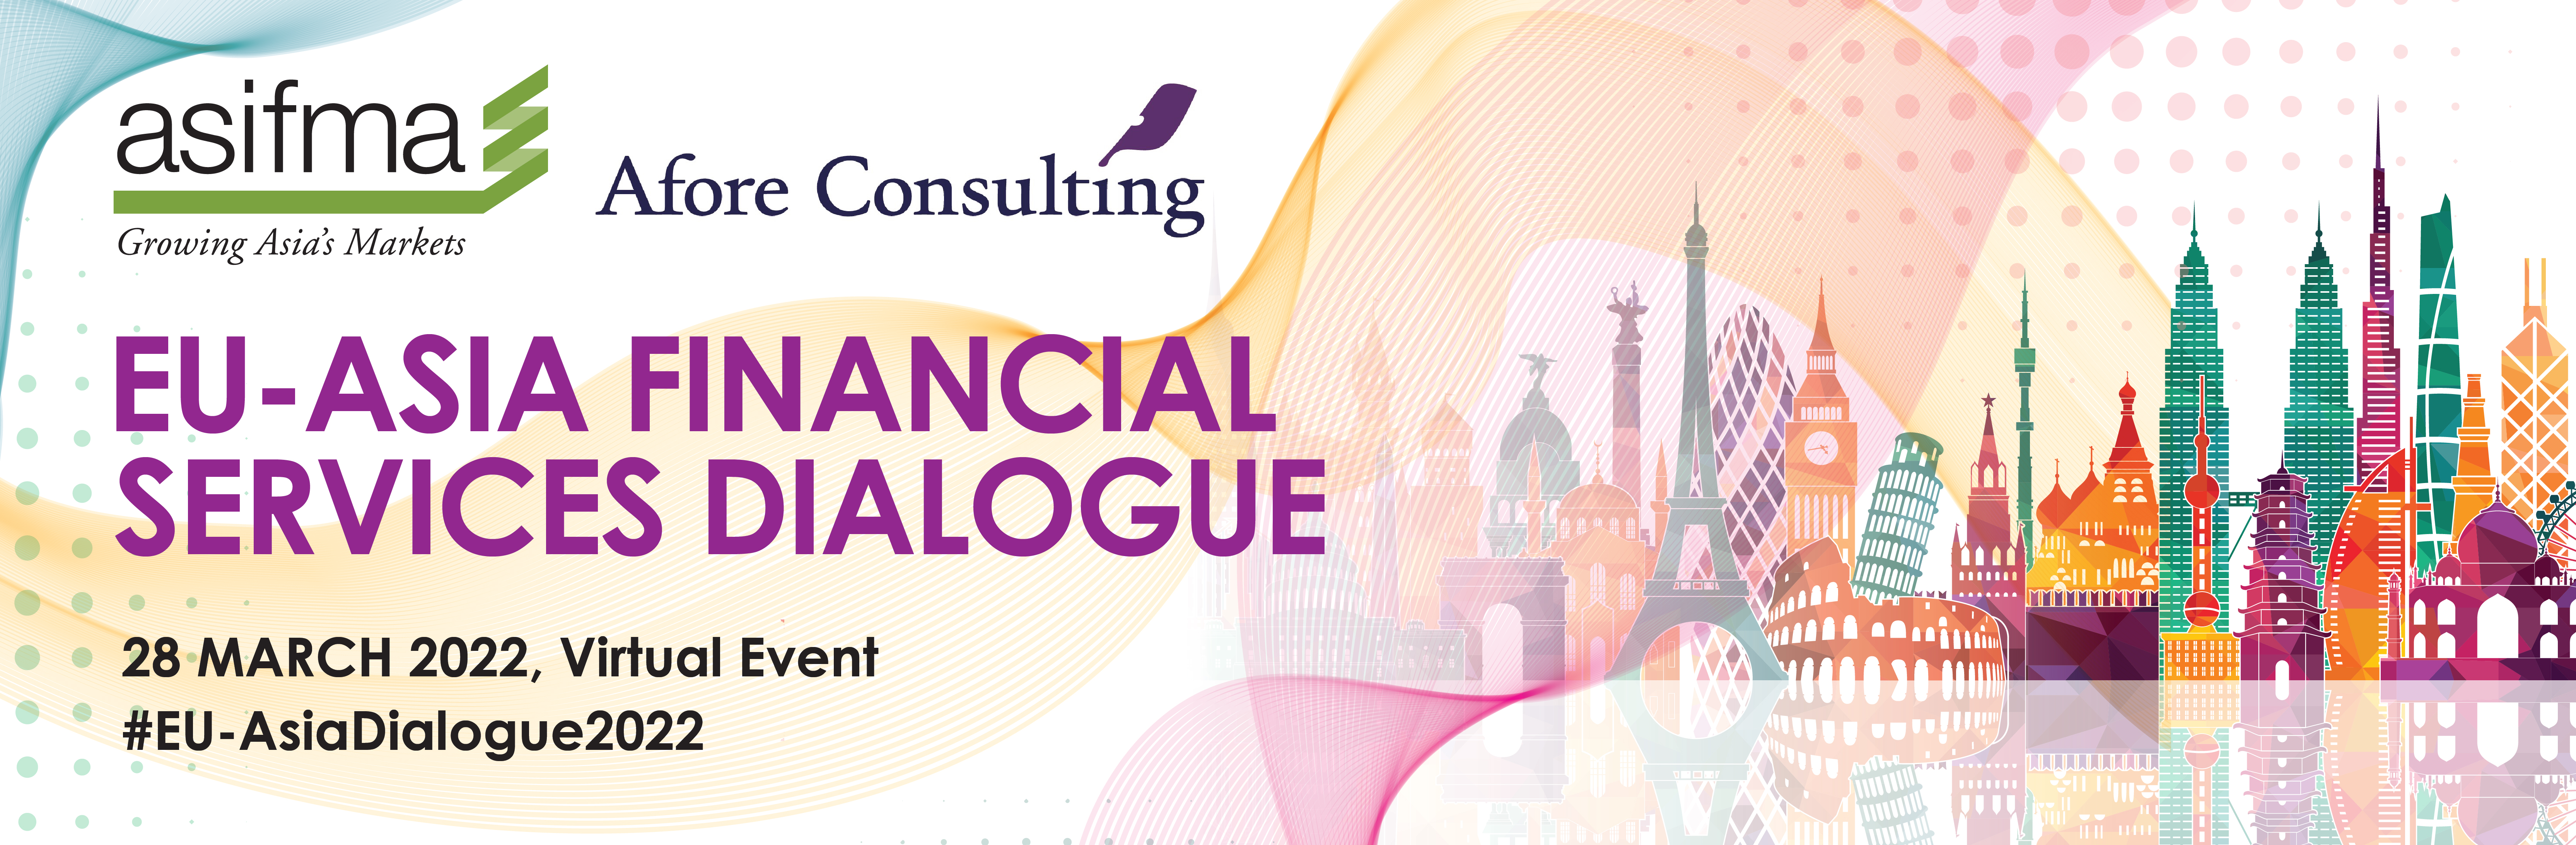 8th EU-Asia Financial Services Dialogue